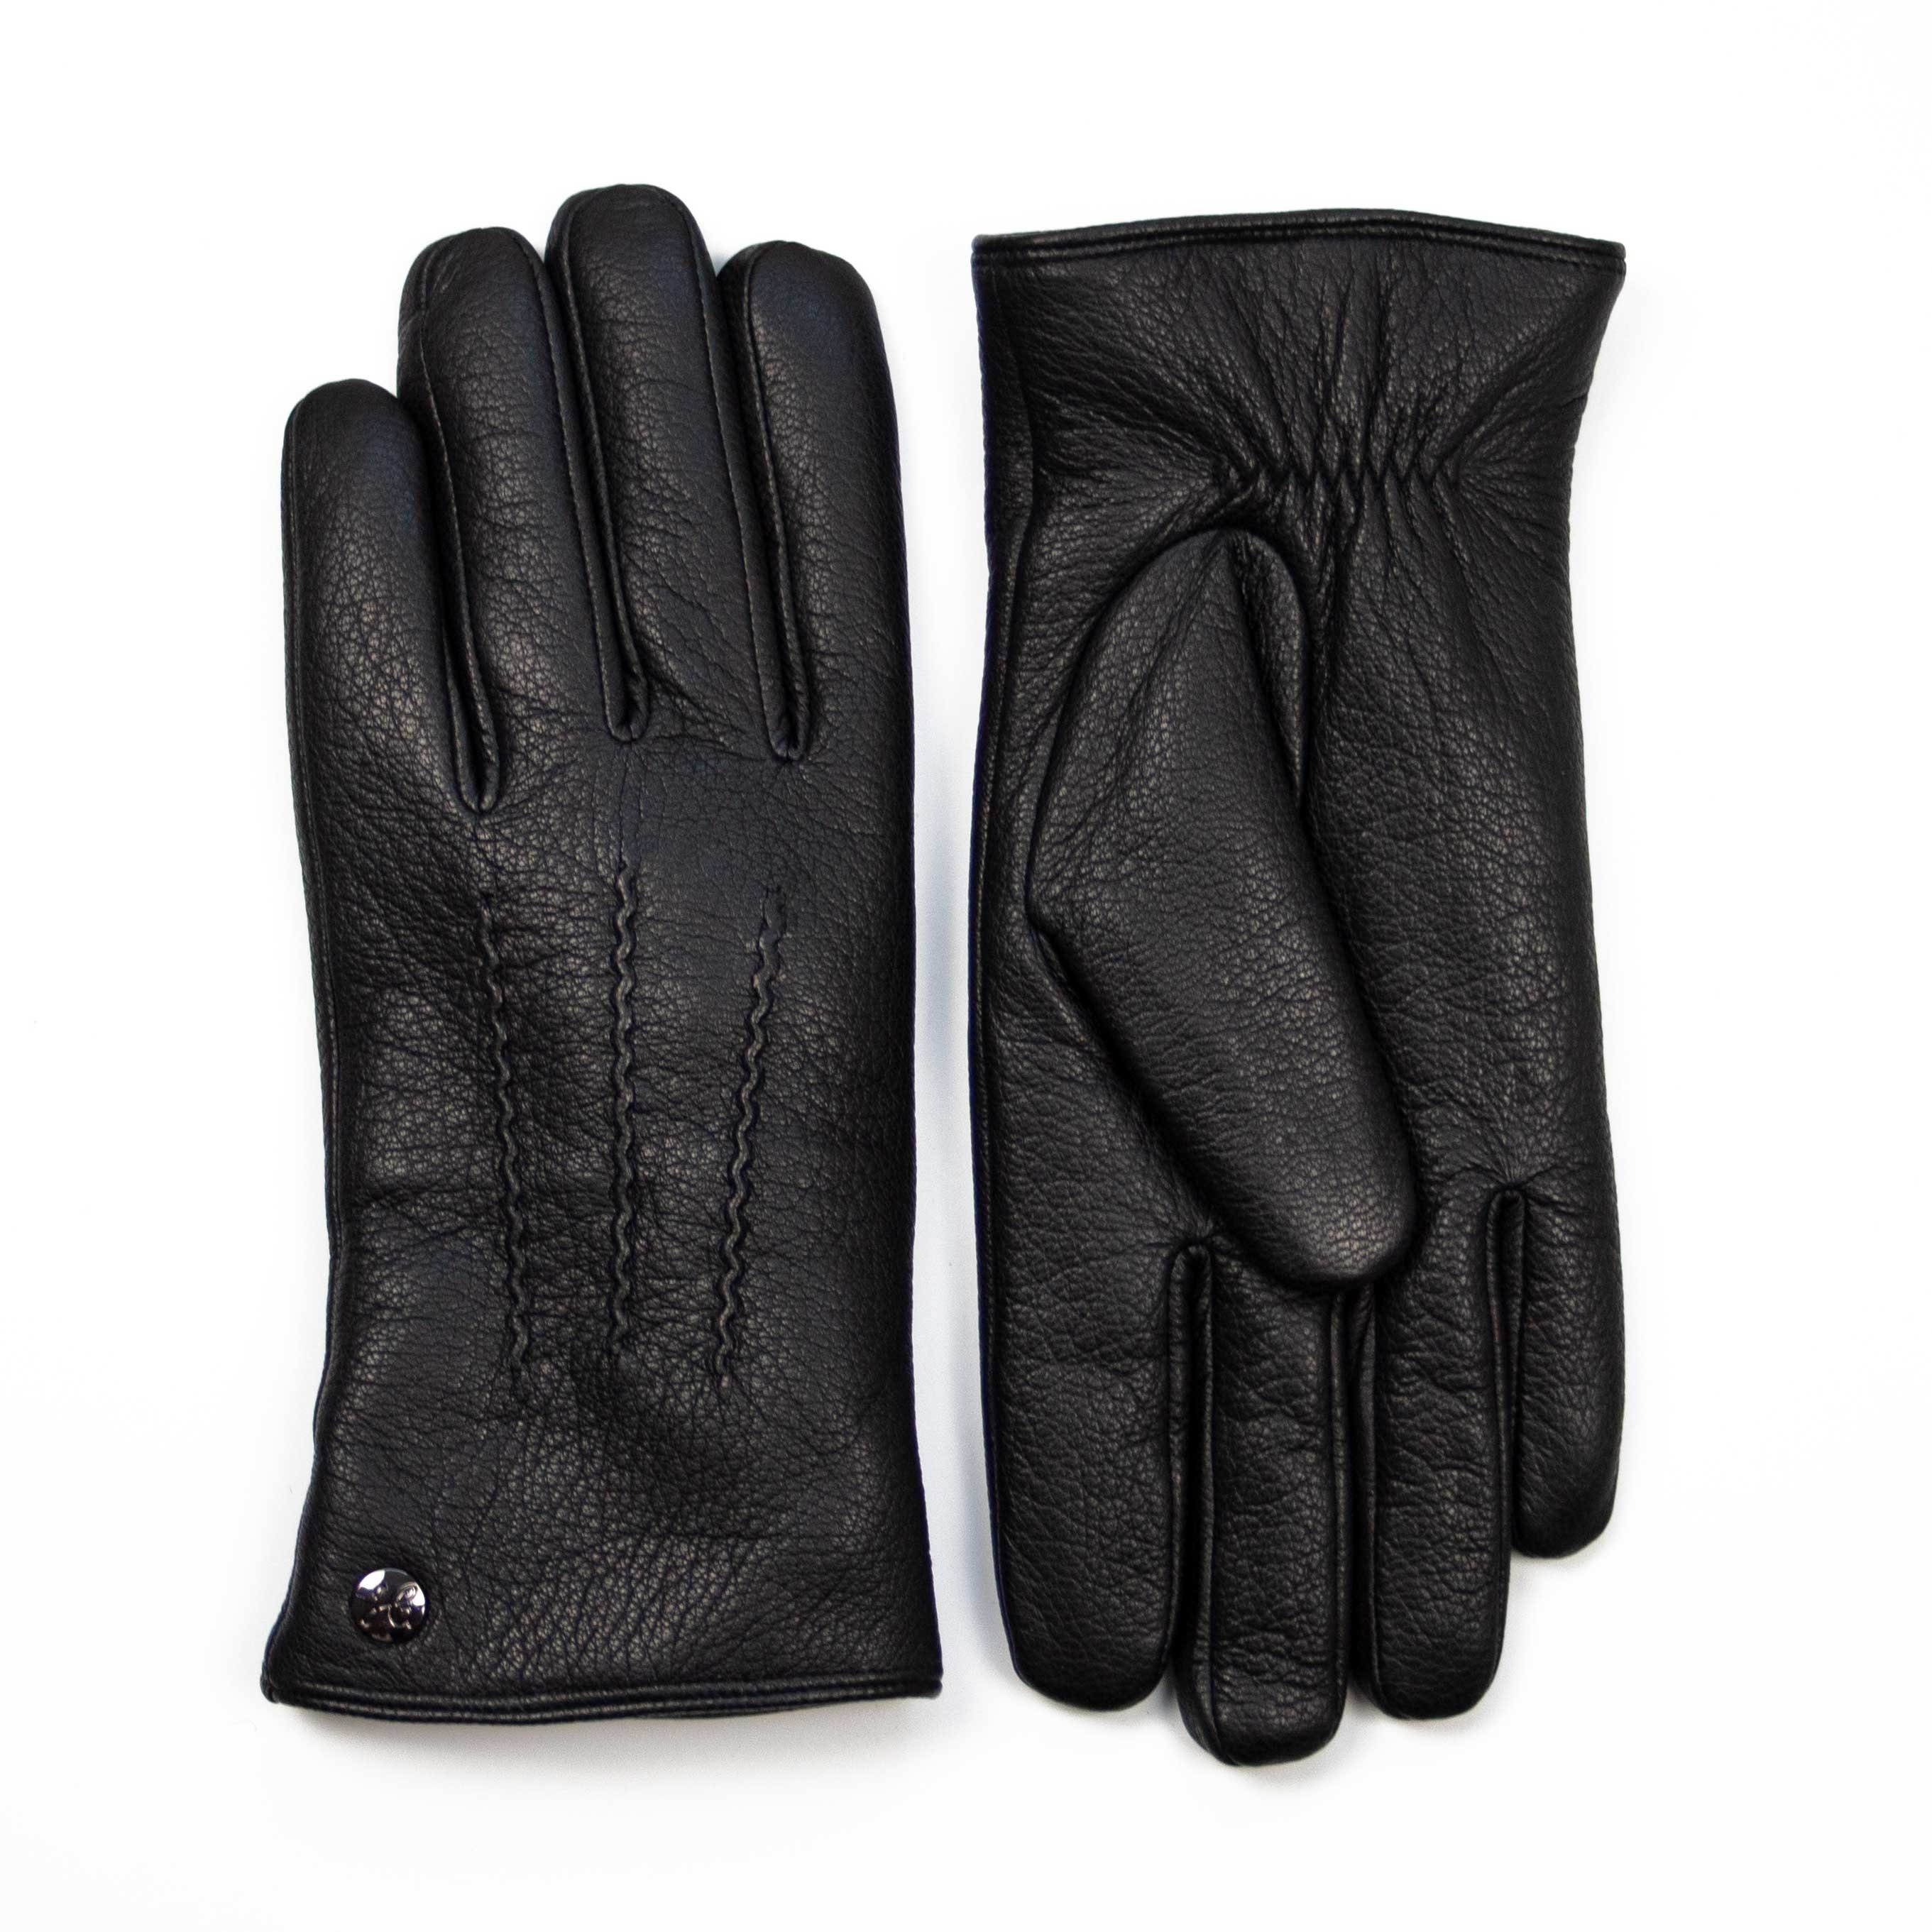 Hand CHUCK-Ziegenleder Lammfell Gewand Handschuhe by Weikert Futter-Touchscreenfähig Lederhandschuhe mit